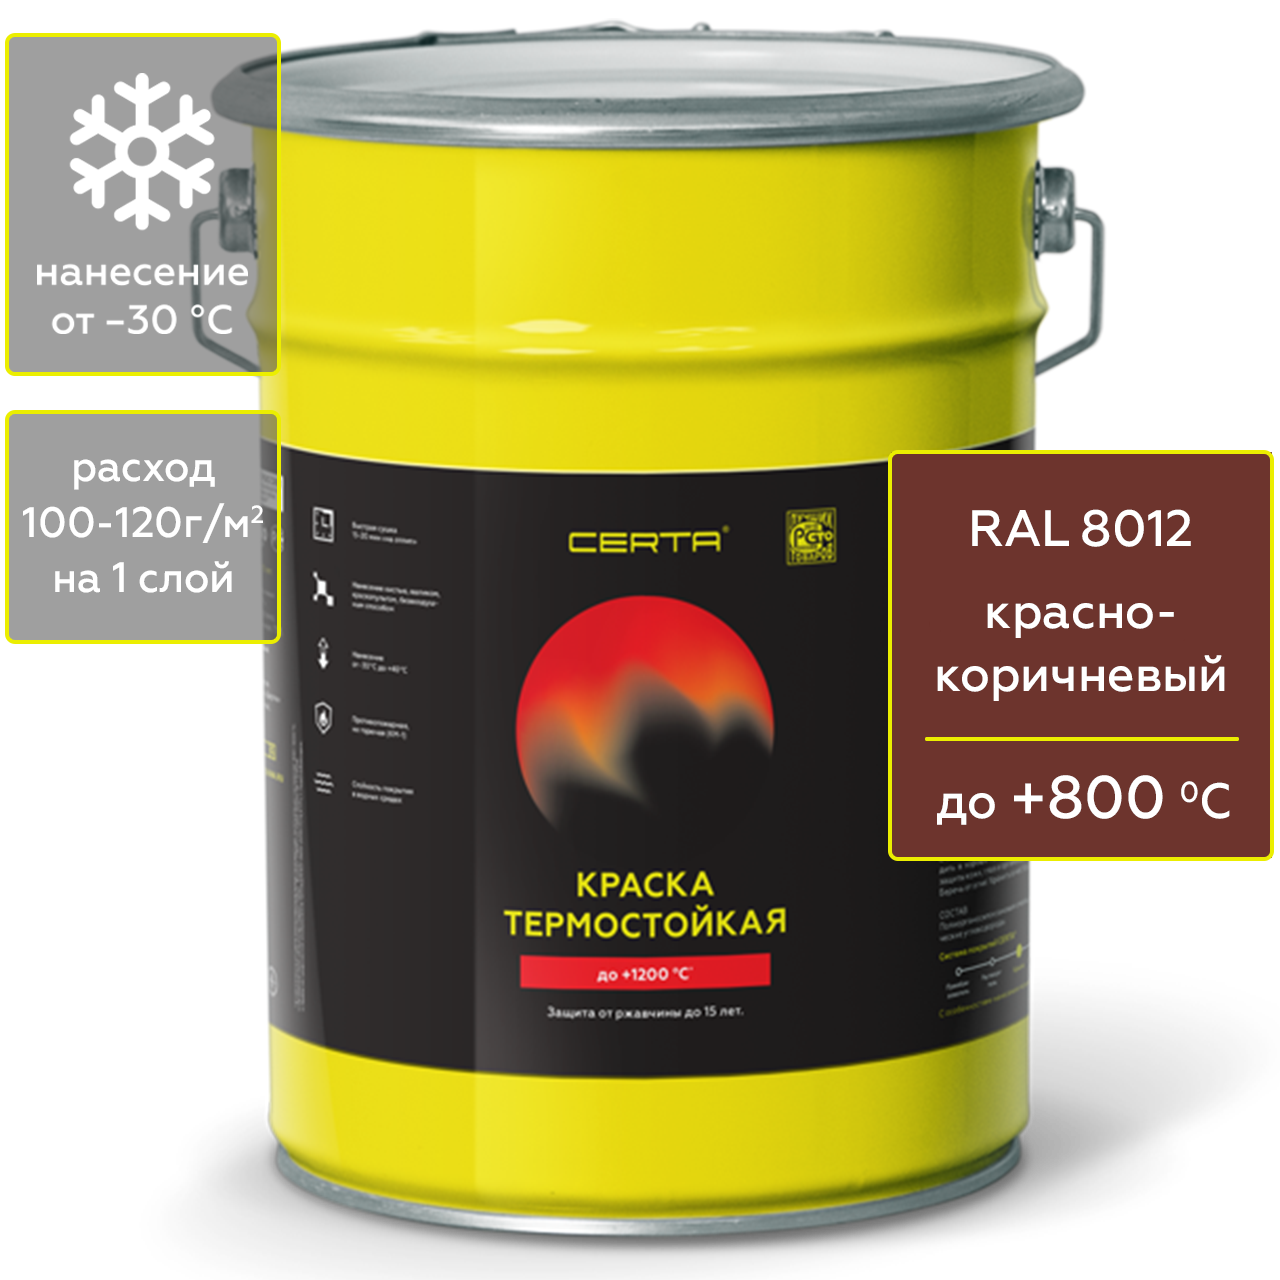 Краска Certa для печей, мангалов и радиаторов термостойкая до 800°С красно-коричневый 4 кг